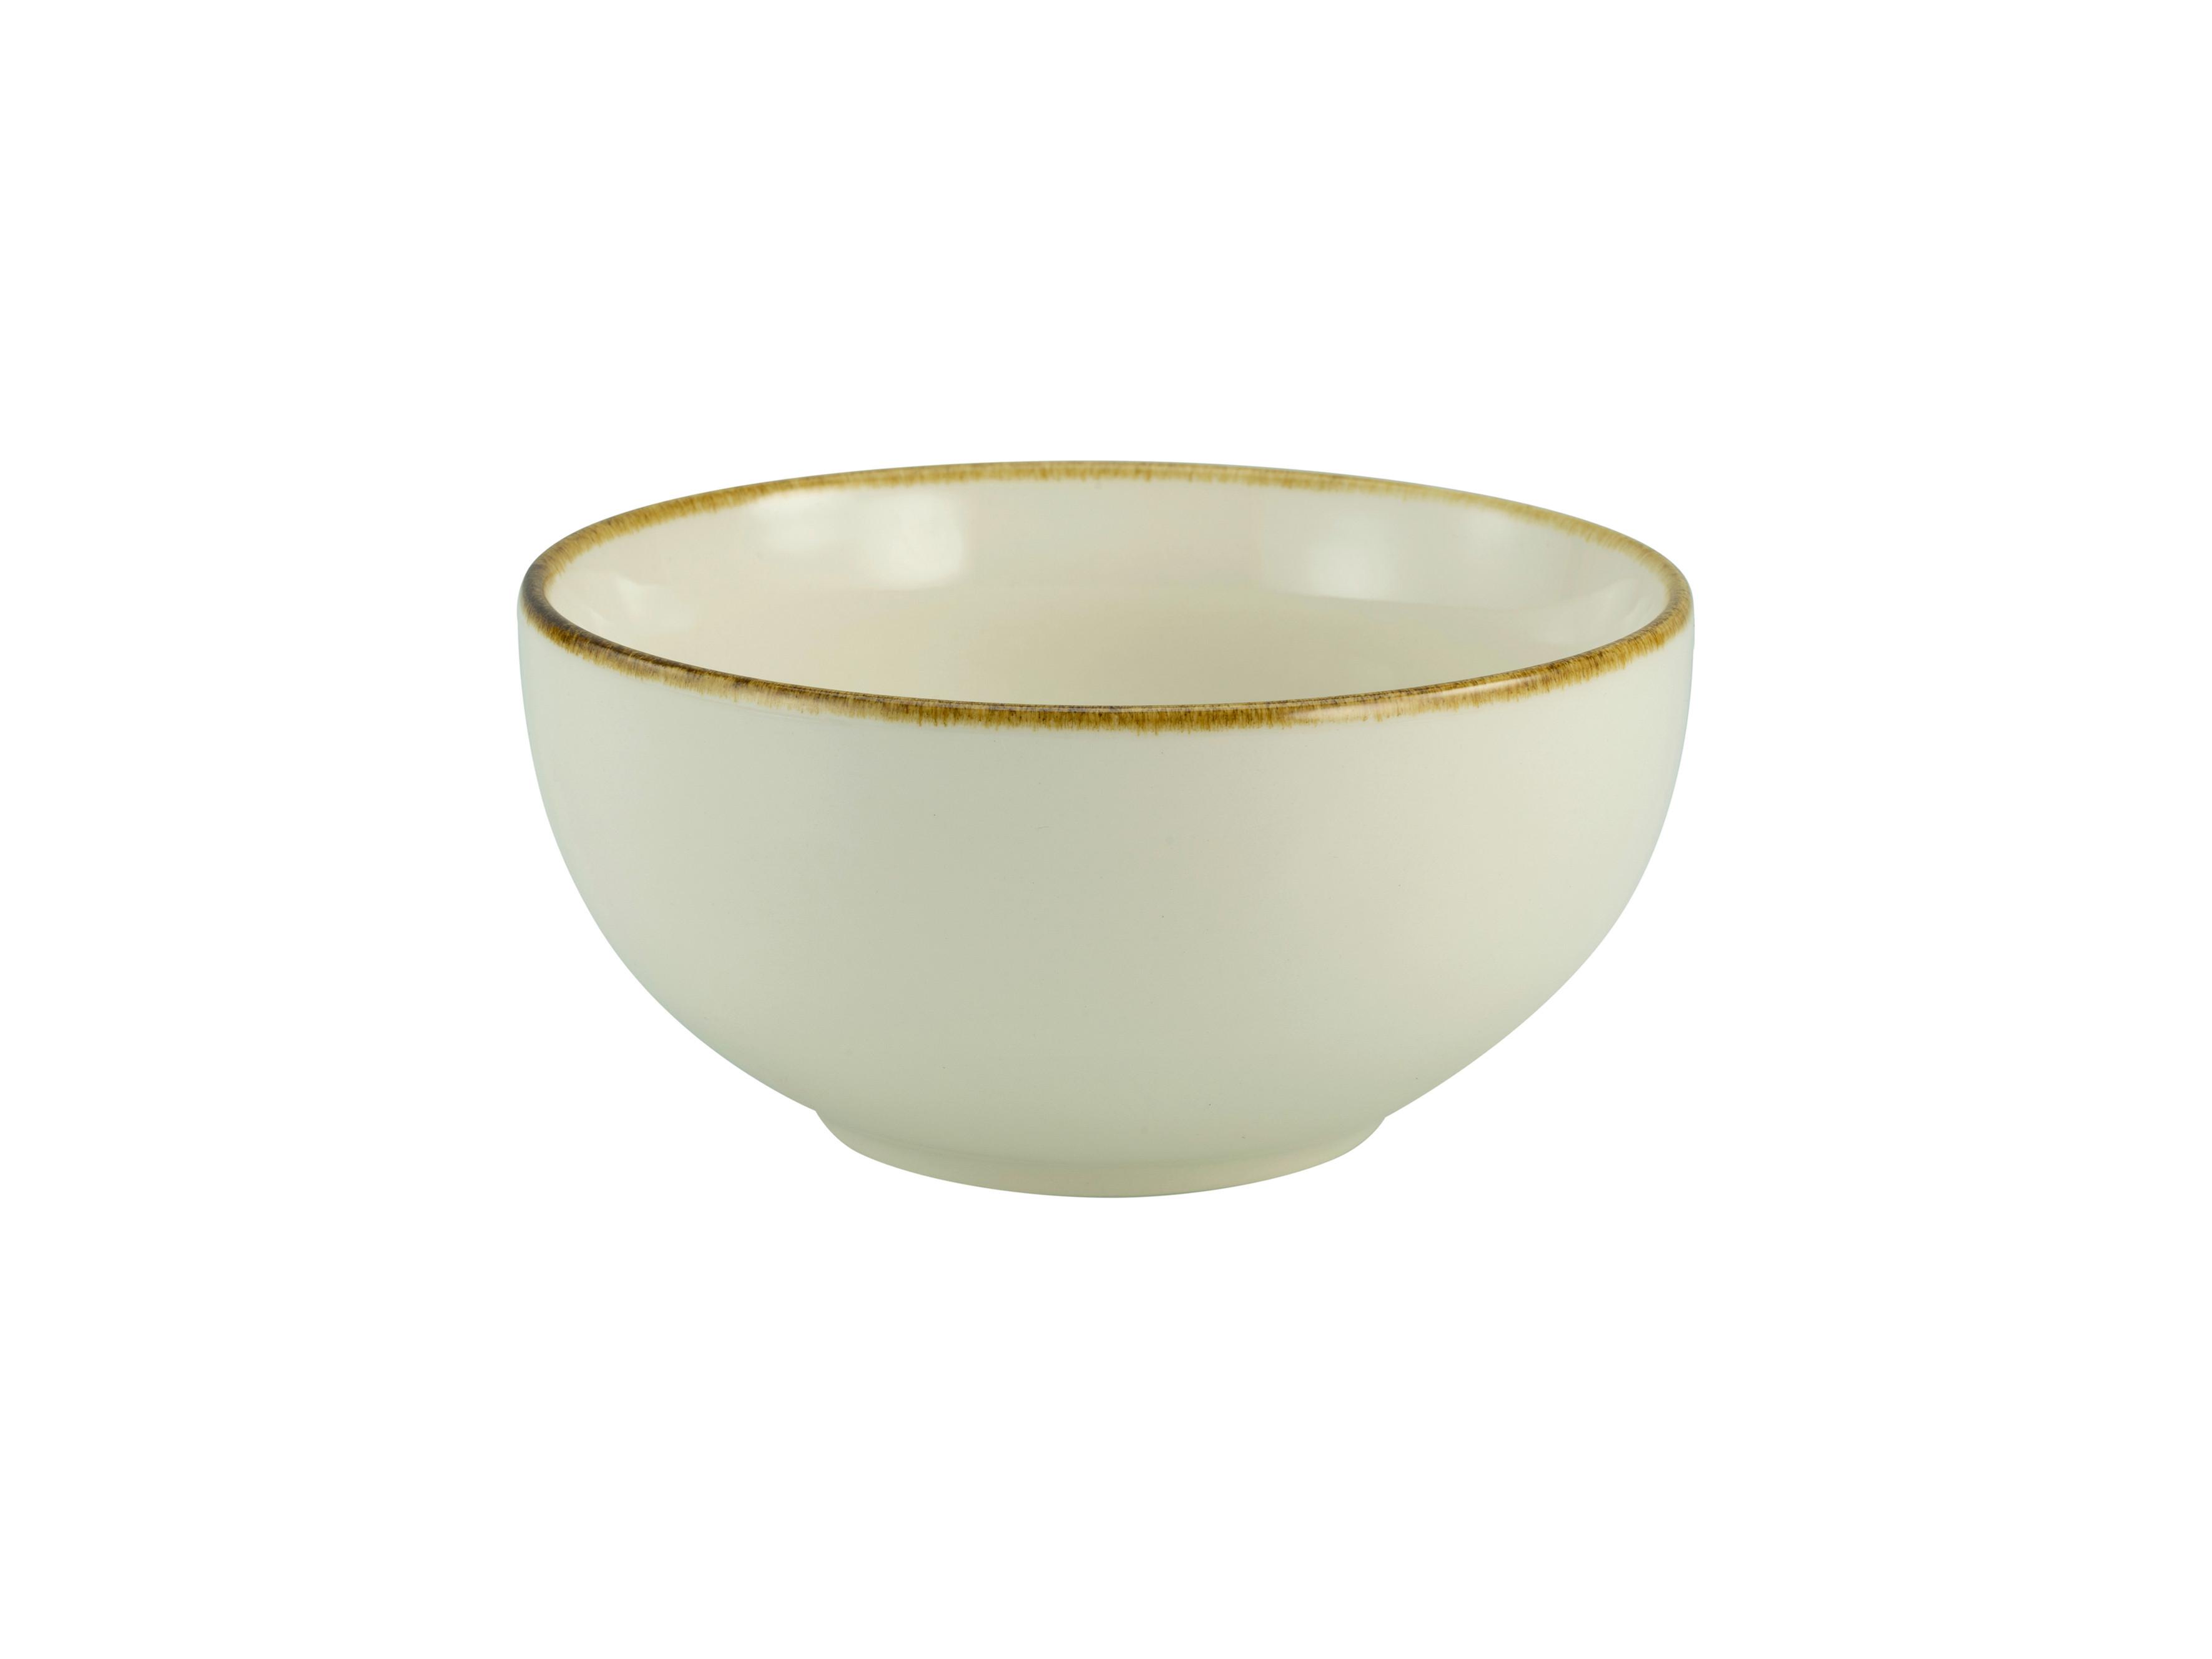 MISECZKA DO MUSLI LINEN - kremowy/biały, ceramika (14/14/7cm) - Premium Living